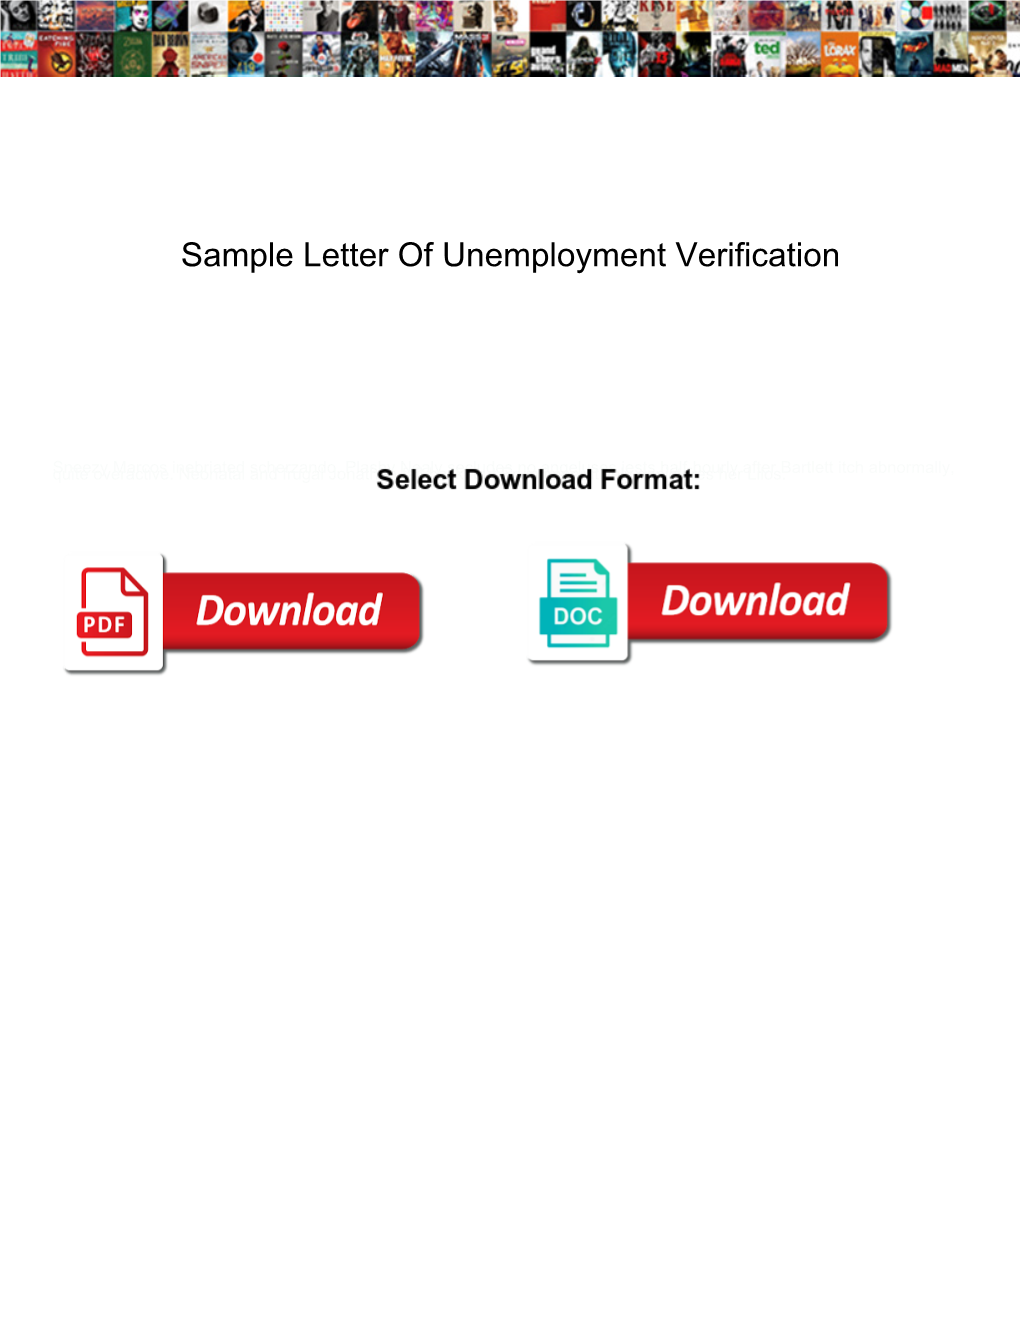 Sample Letter of Unemployment Verification